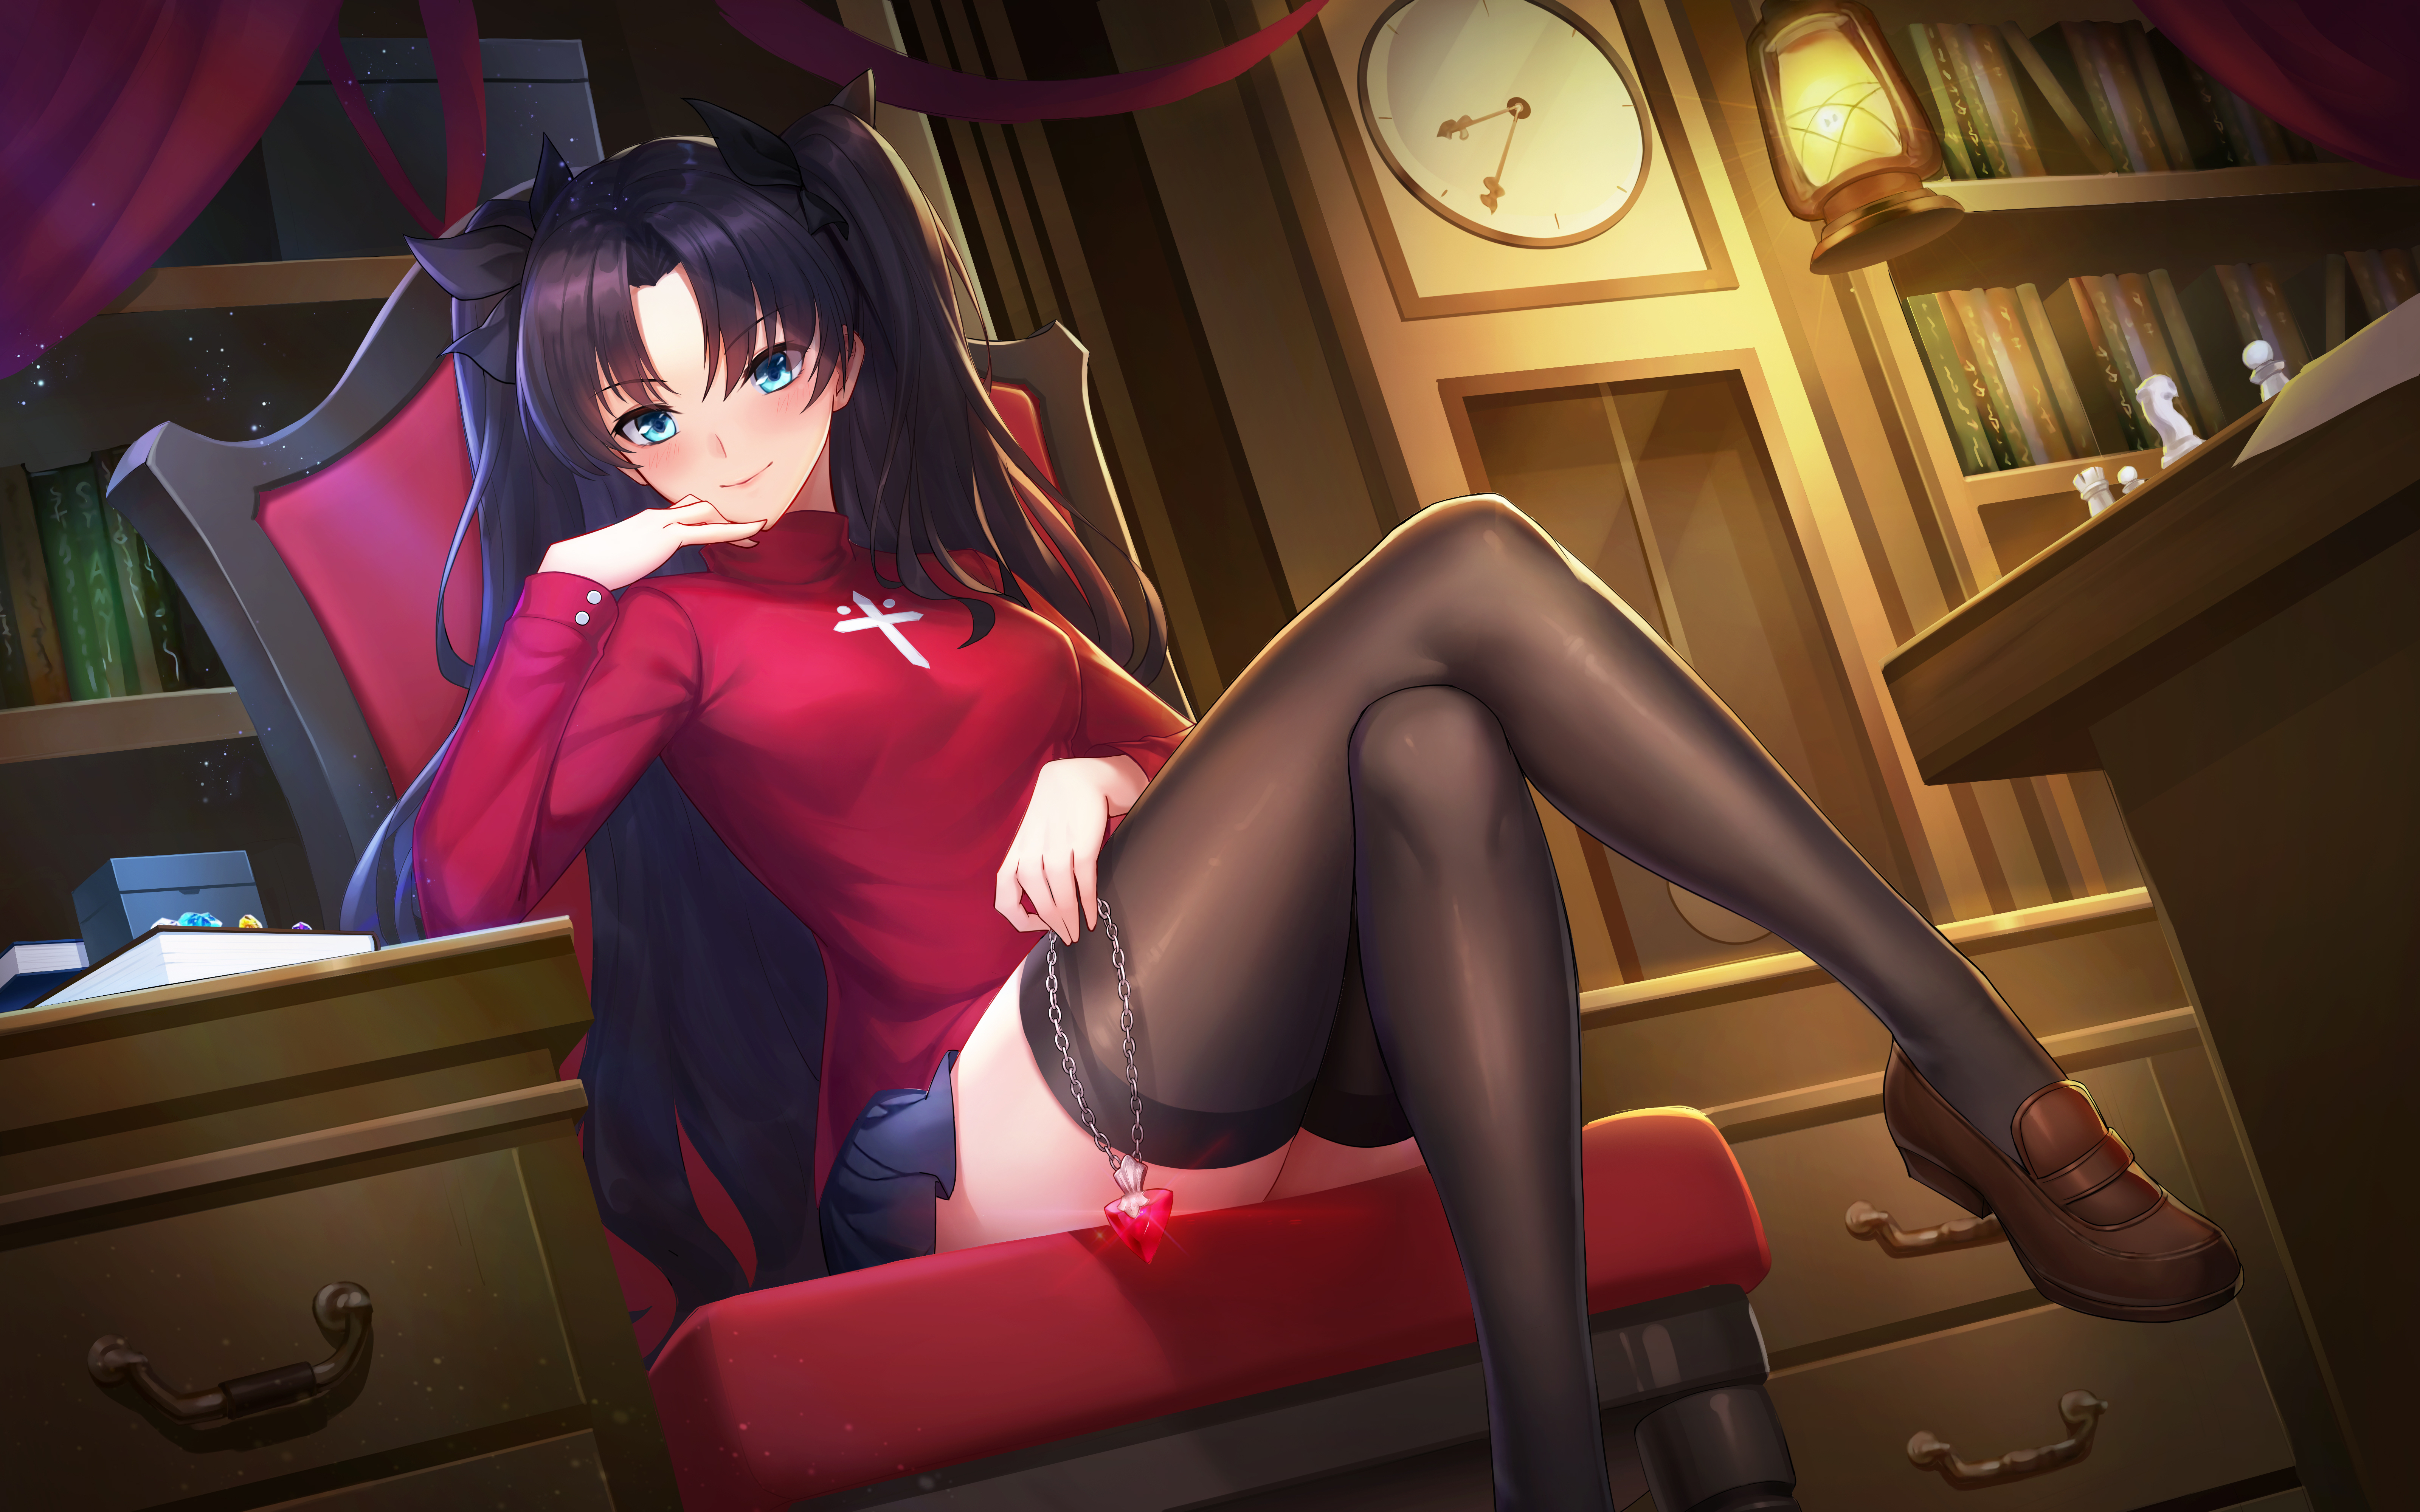 Long Hair Black Hair Tohsaka Rin Anime Blue Hair Black Socks Smiling Red Shirt Clocks Curtain Jewel  6400x4000